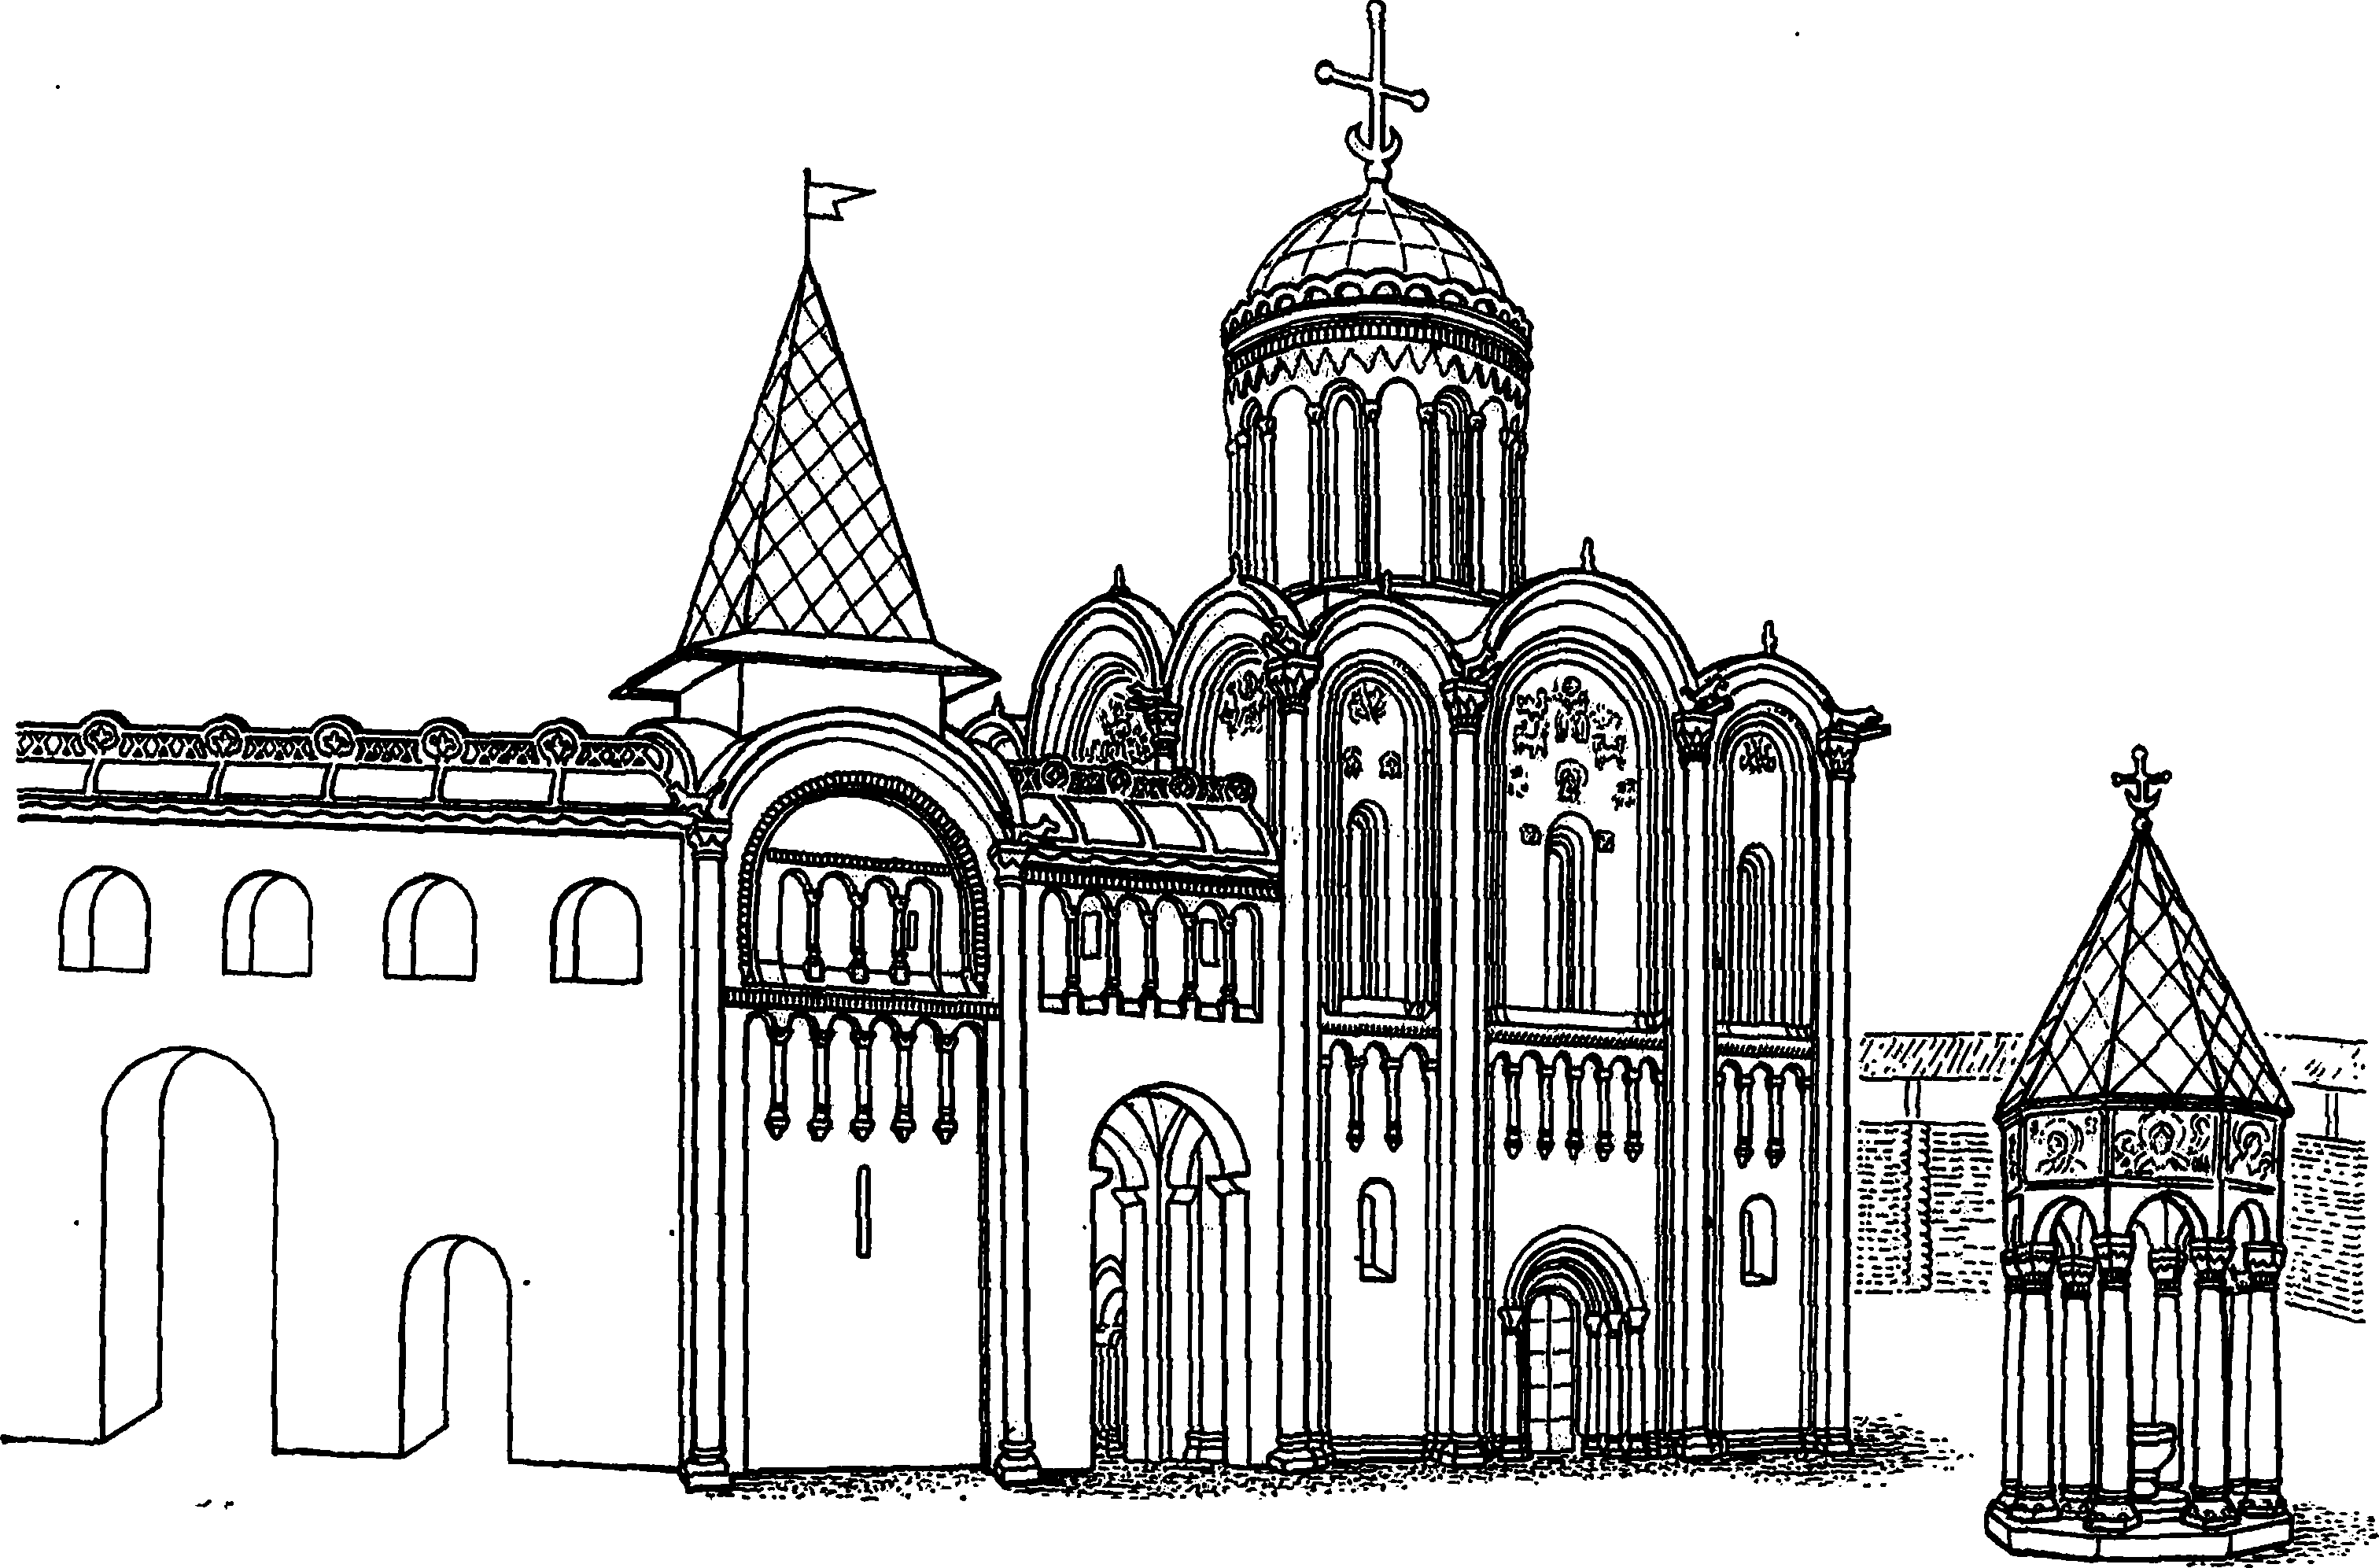 Боголюбово. Часть дворцового комплекса середины XII в. (Реконструкция с использованием данных Н.Н. Воронина)